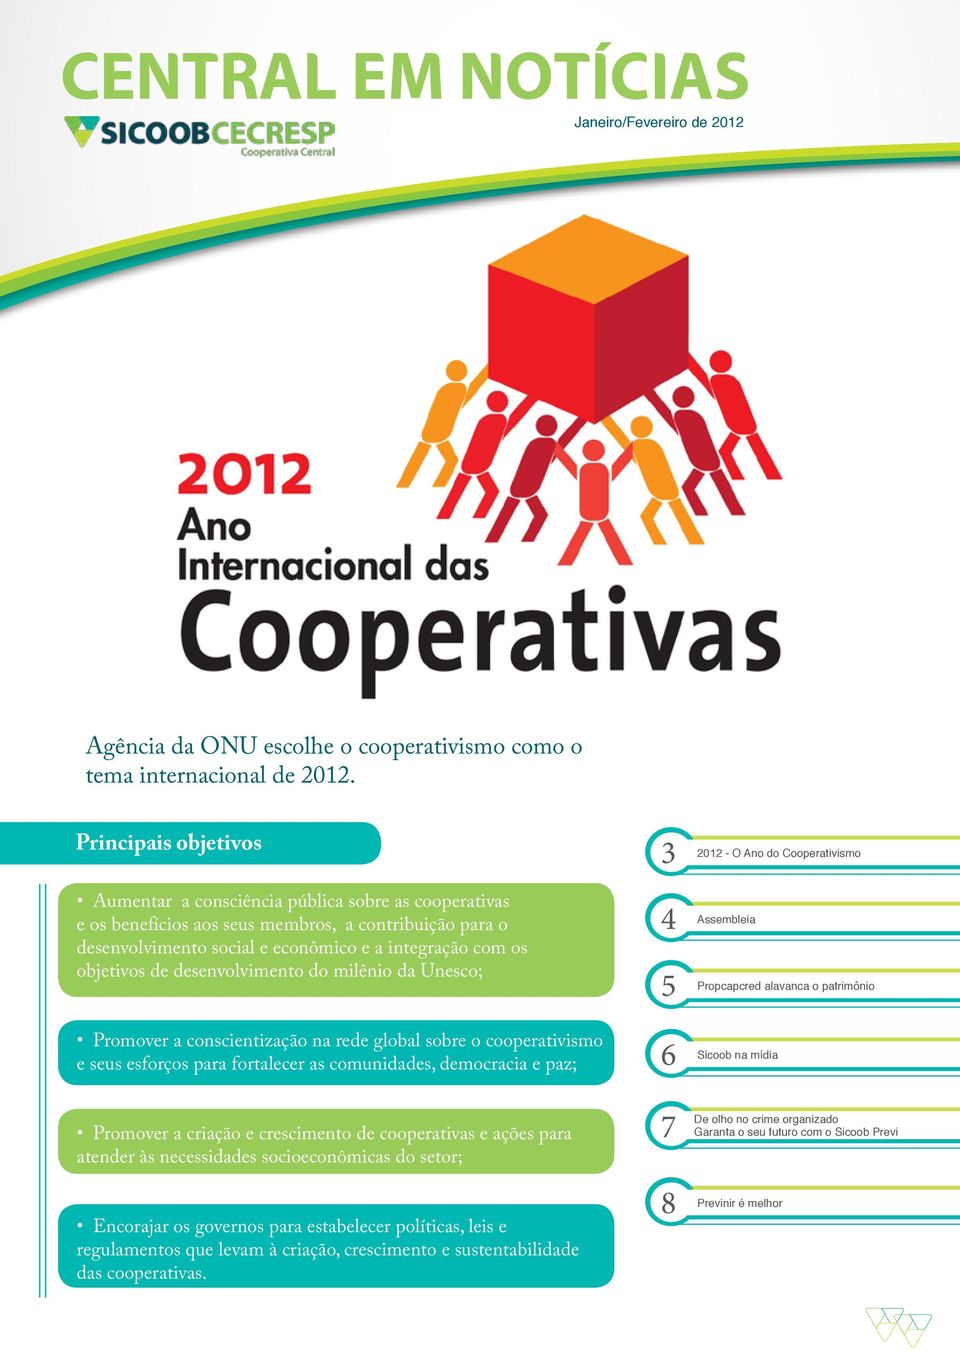 desenvolvimento do milênio da Unesco; 3 4 5 2012 - O Ano do Cooperativismo Assembleia Propcapcred alavanca o patrimônio Promover a conscientização na rede global sobre o cooperativismo e seus